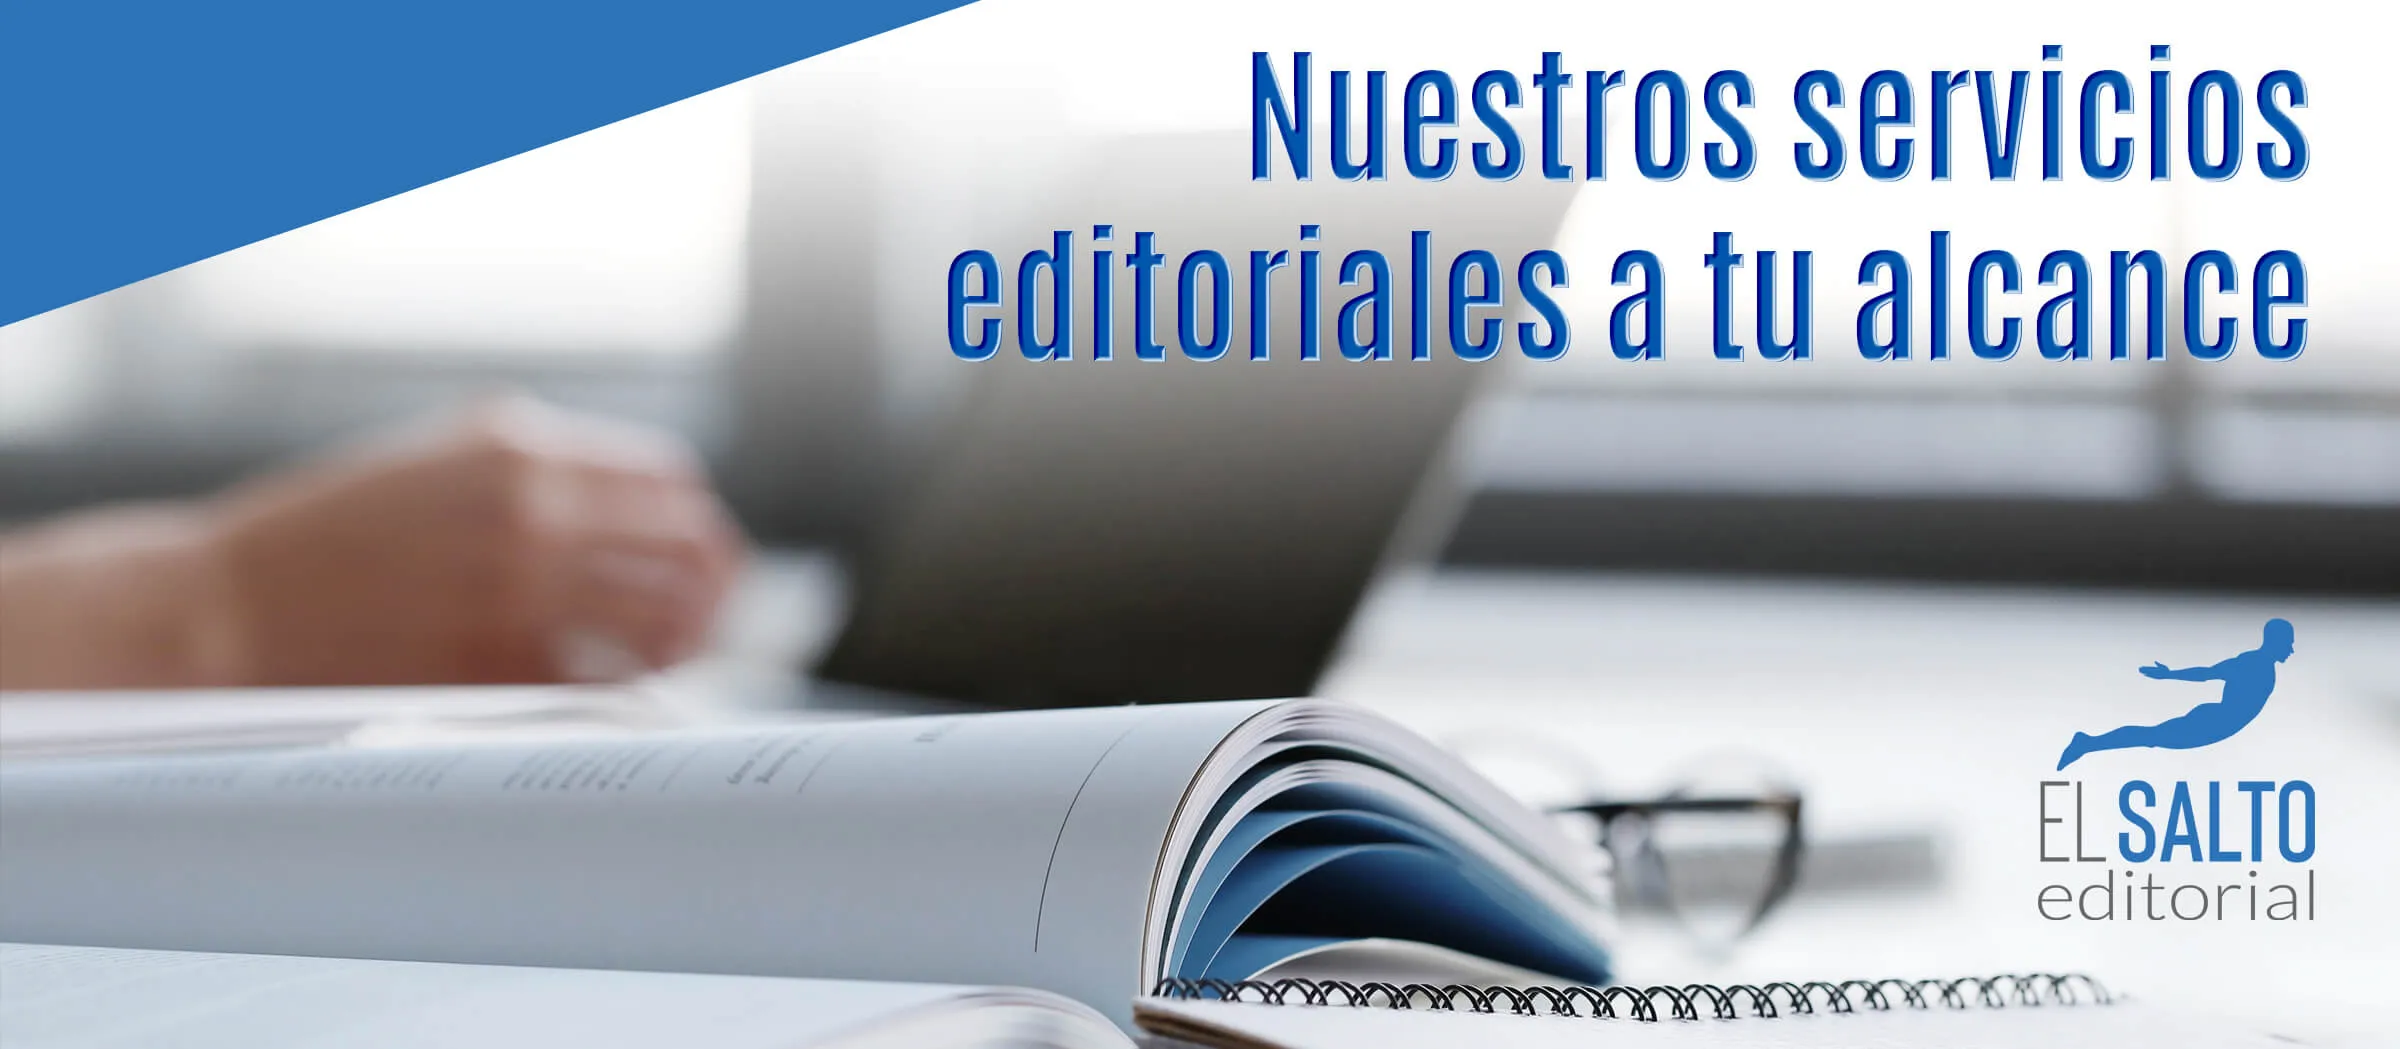 Nuestros servicios editoriales para edición sin publicación y autopublicadores